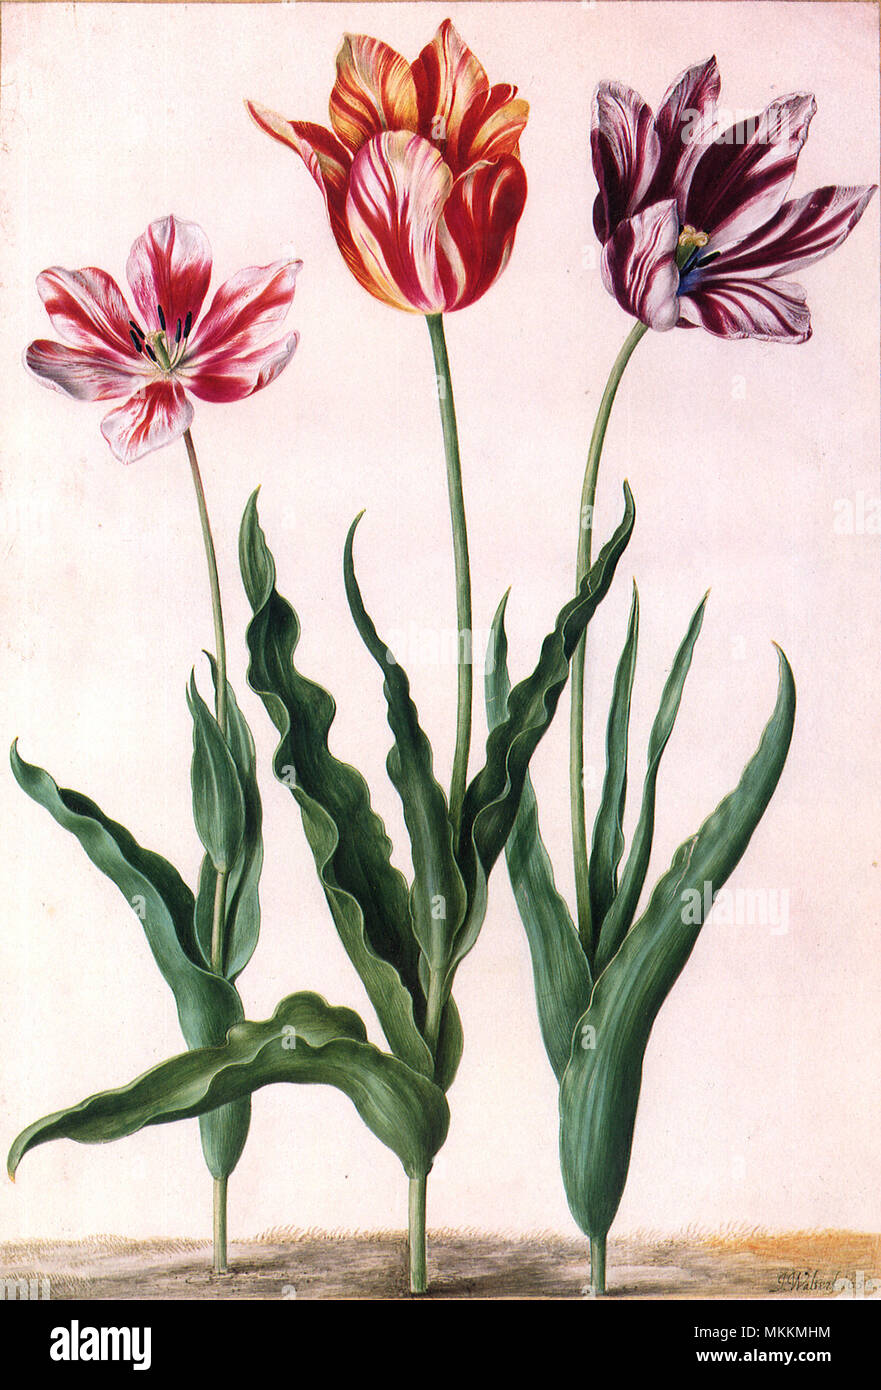 Tulip Botanical Stock Photo